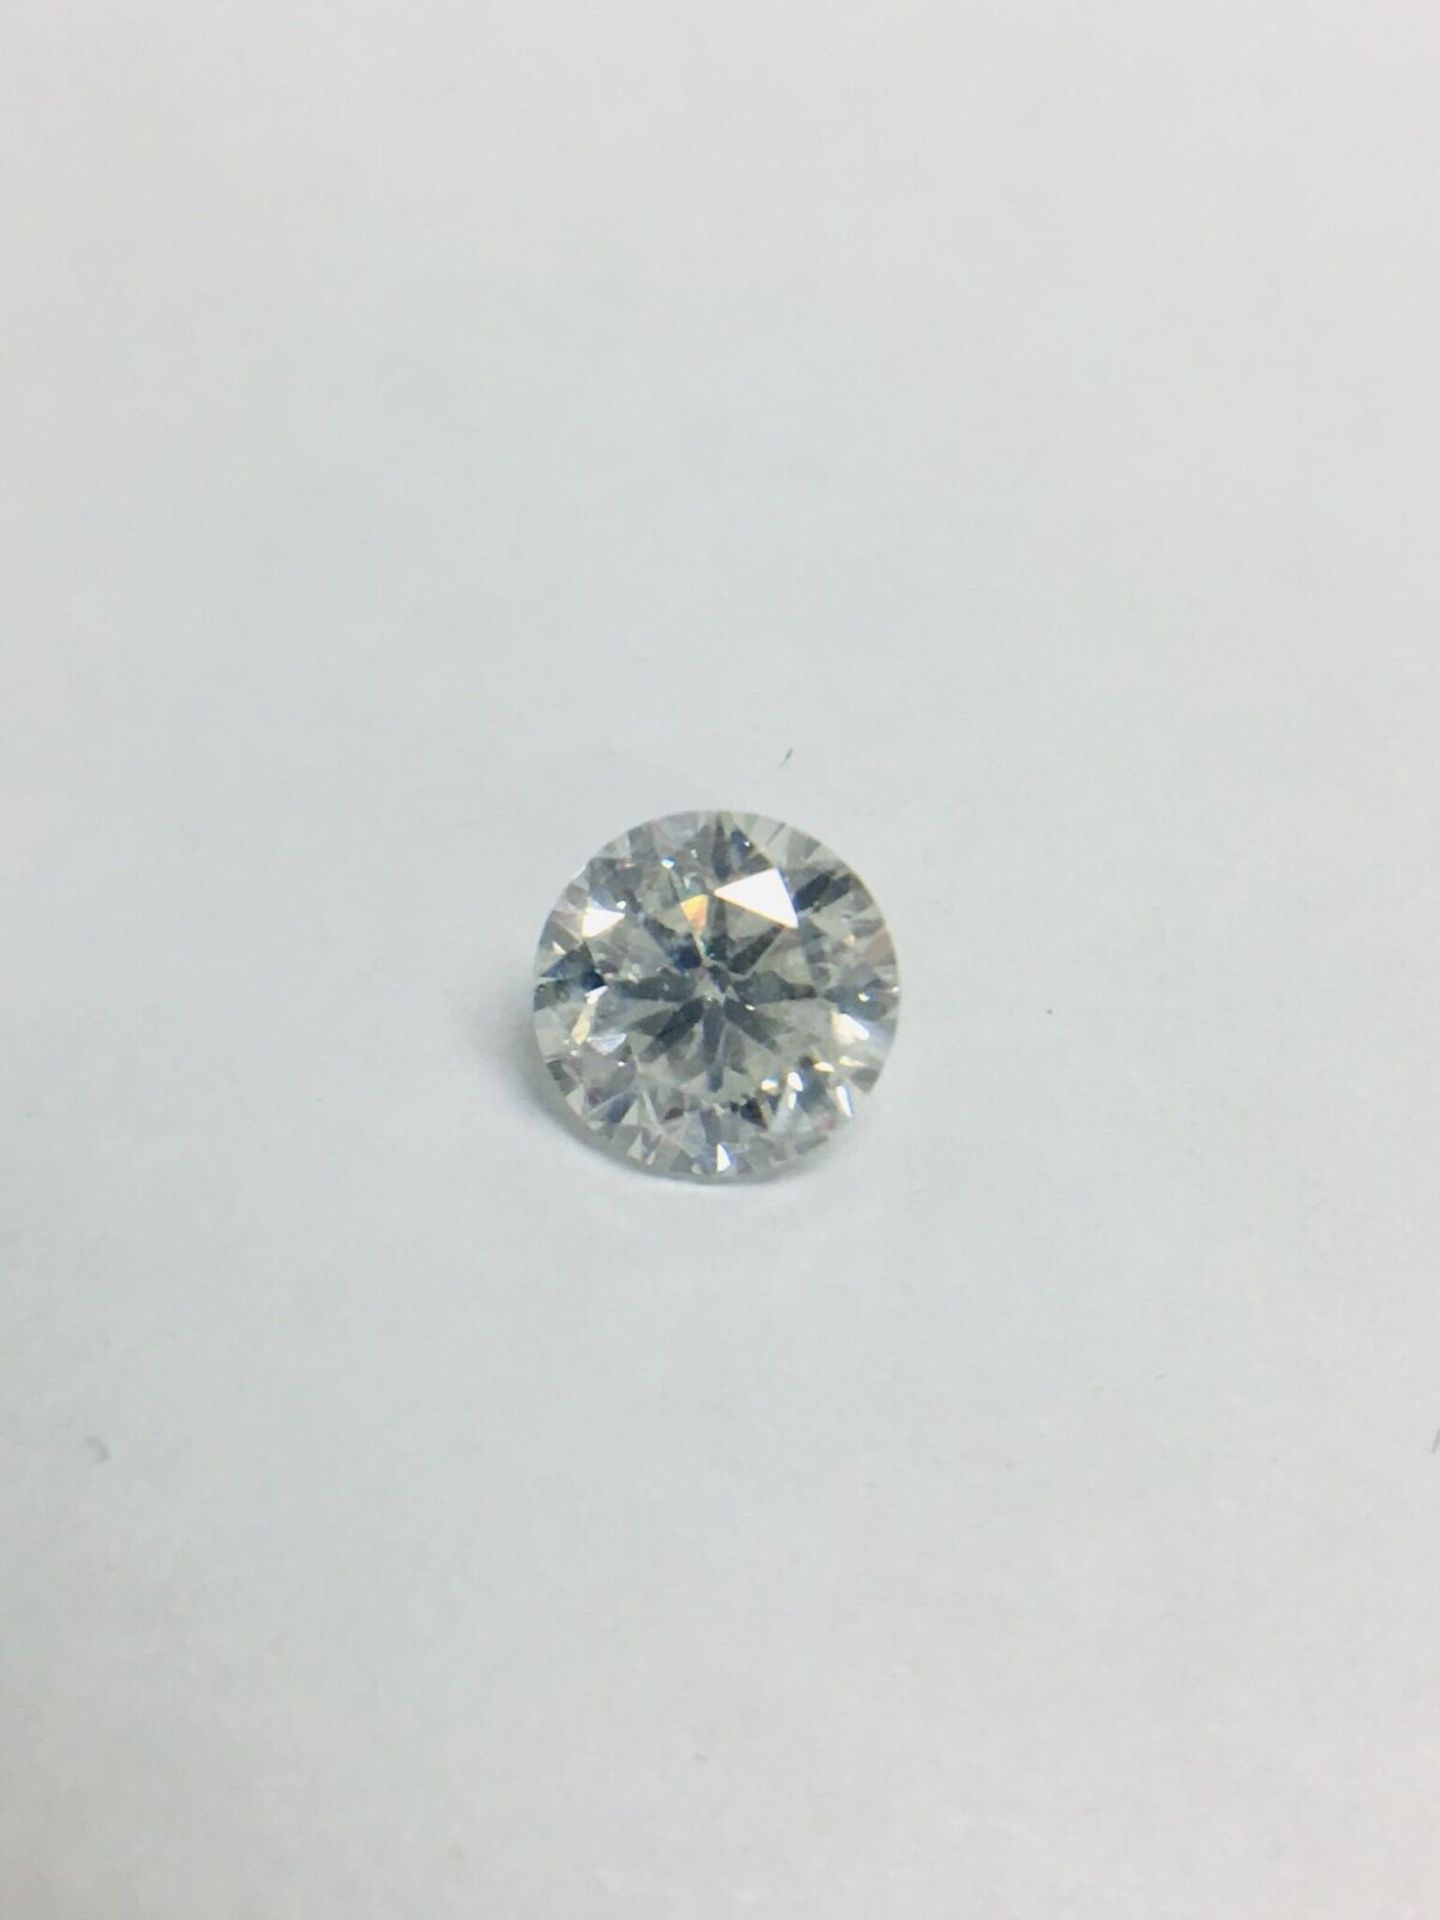 1.01Ct Round Brilliant Cut Diamond - Image 3 of 3